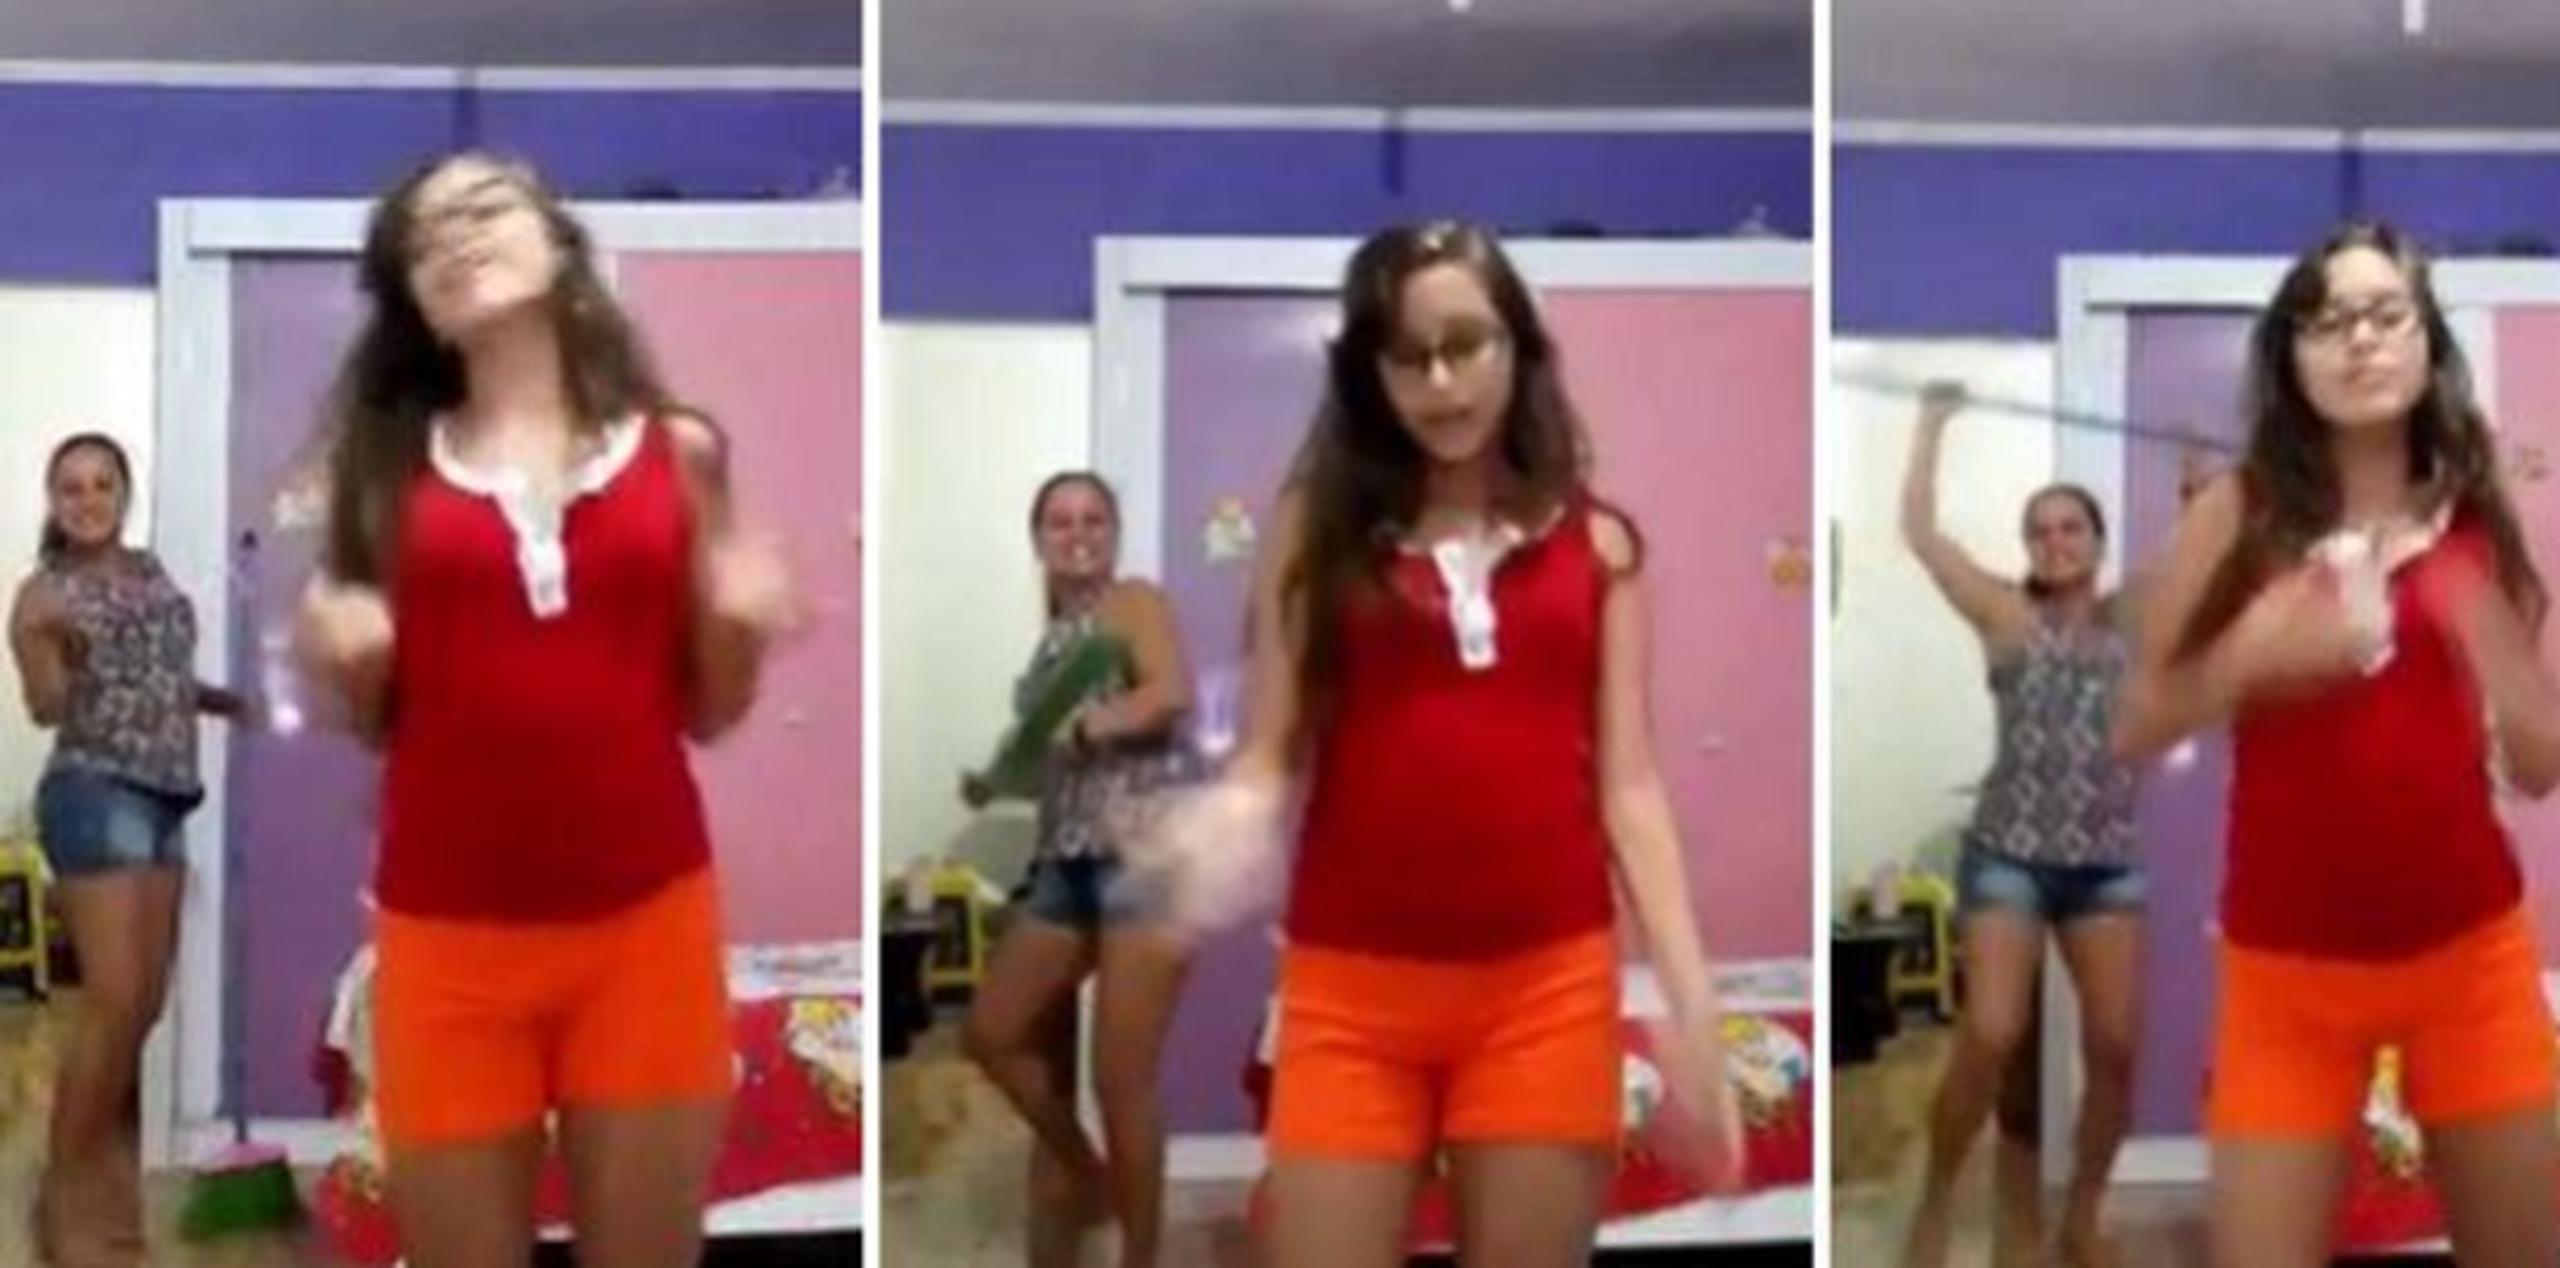 Como se ve en las imágenes de Facebook, la niña pone una canción de su elección y empieza a bailar una coreografía. (Captura / Facebook)